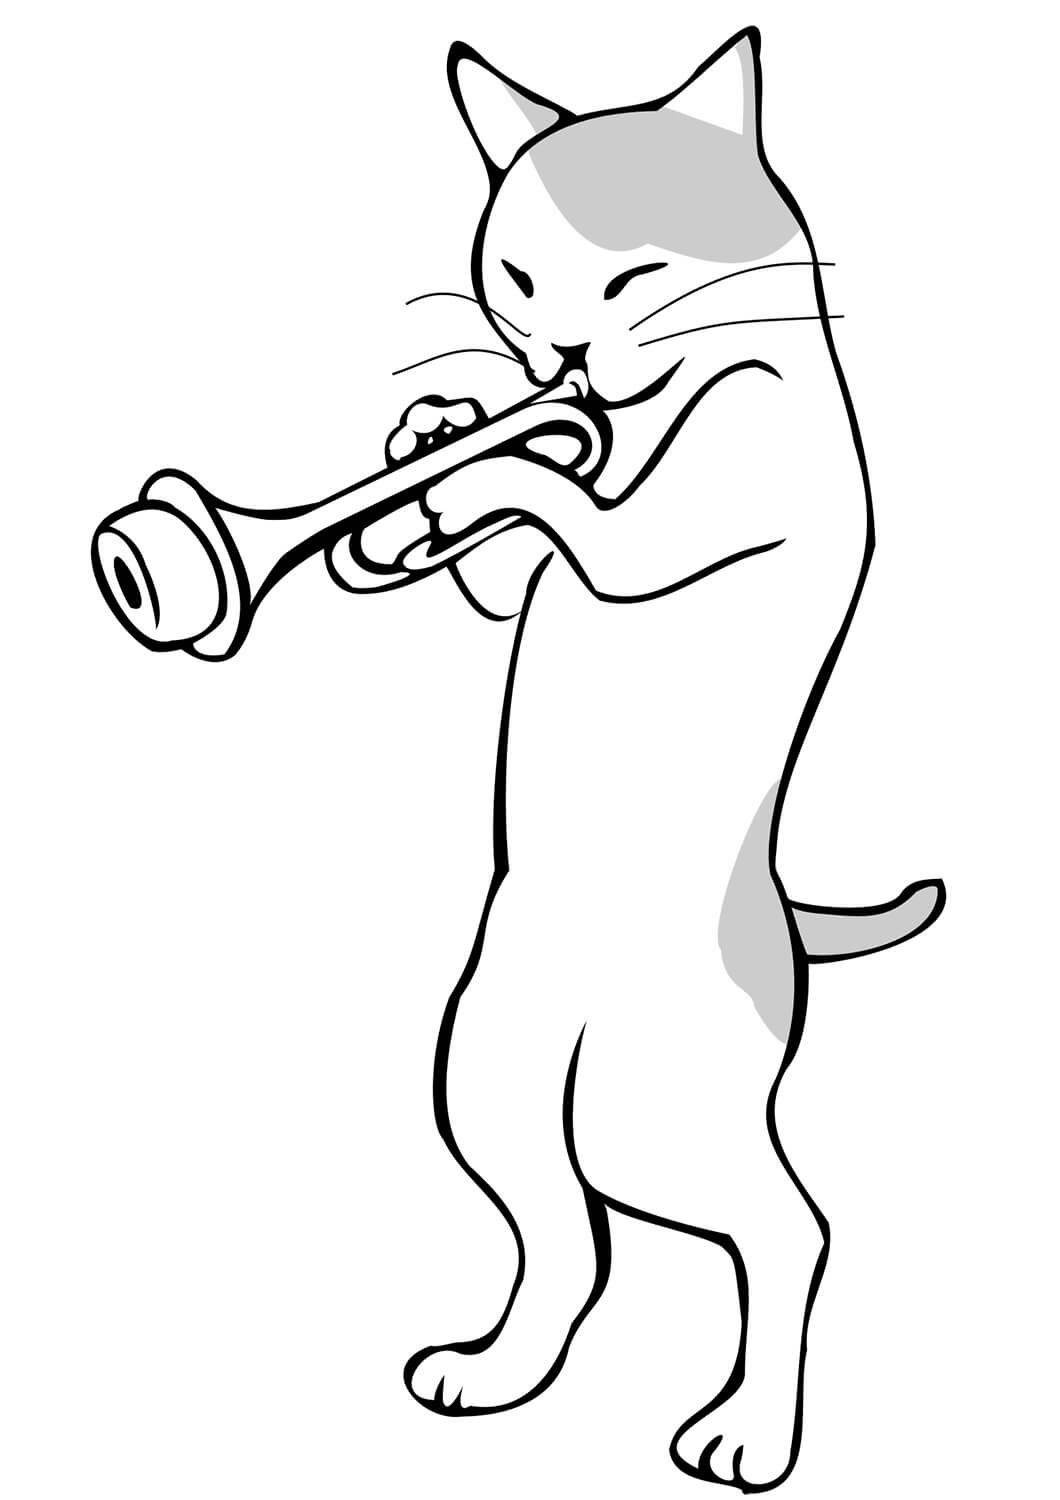 트럼펫을 연주하는 고양이